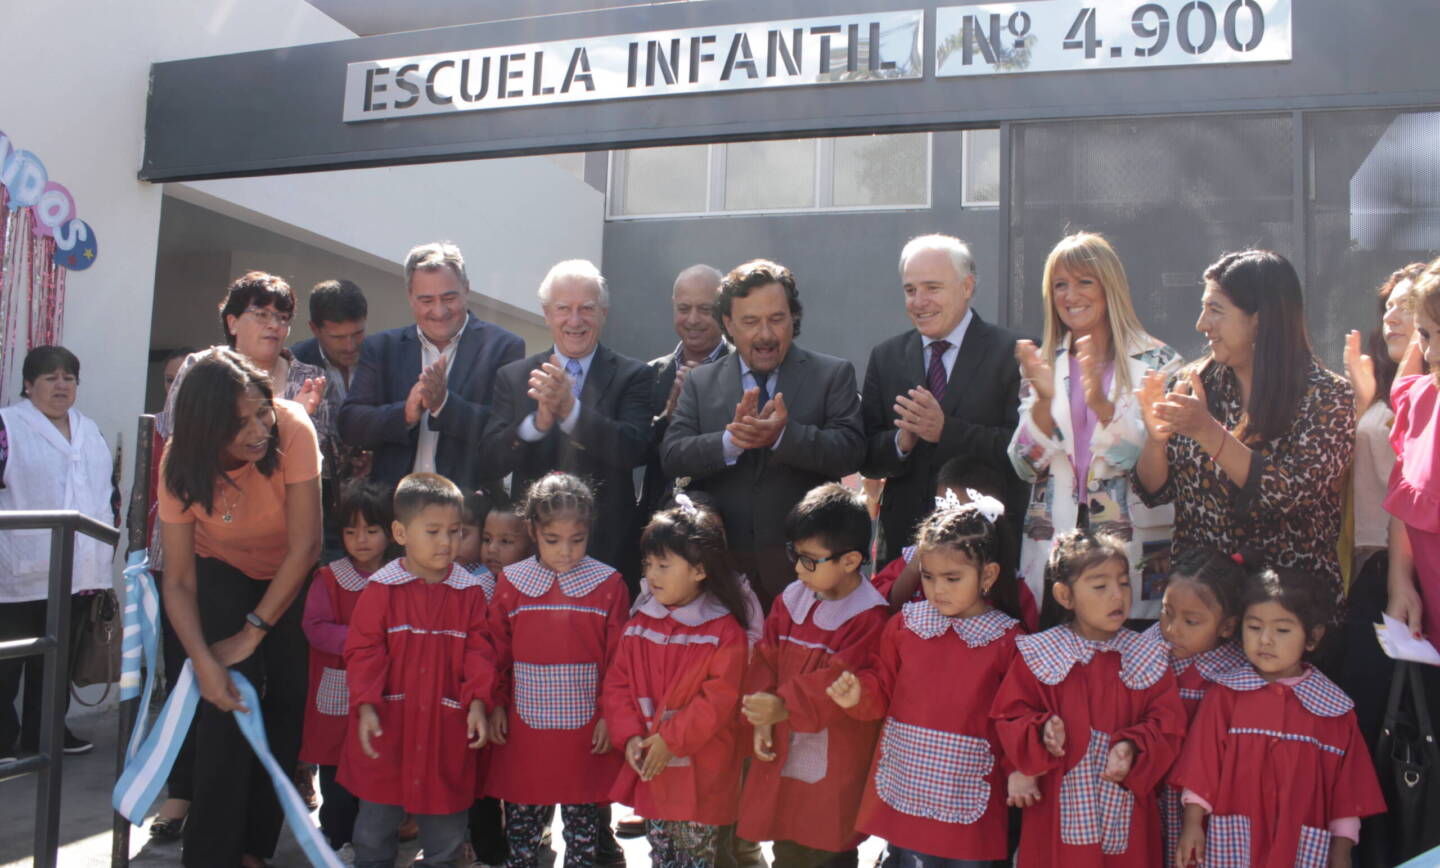 Se inauguró la Escuela infantil N° 4900